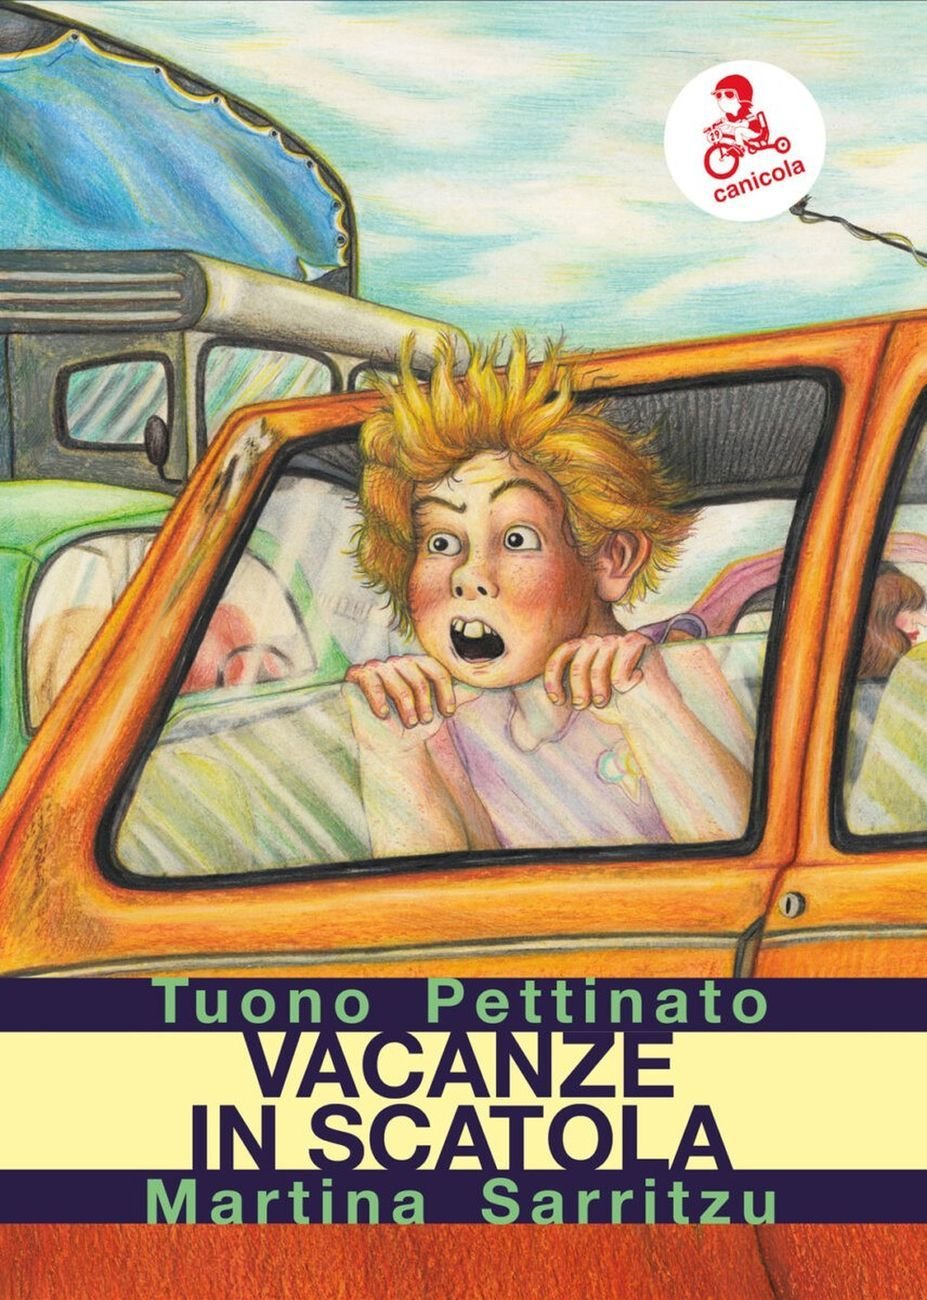 Martina Sarritzu & Tuono Pettinato – Vacanze in scatola (Canicola Edizioni, Bologna 2020)